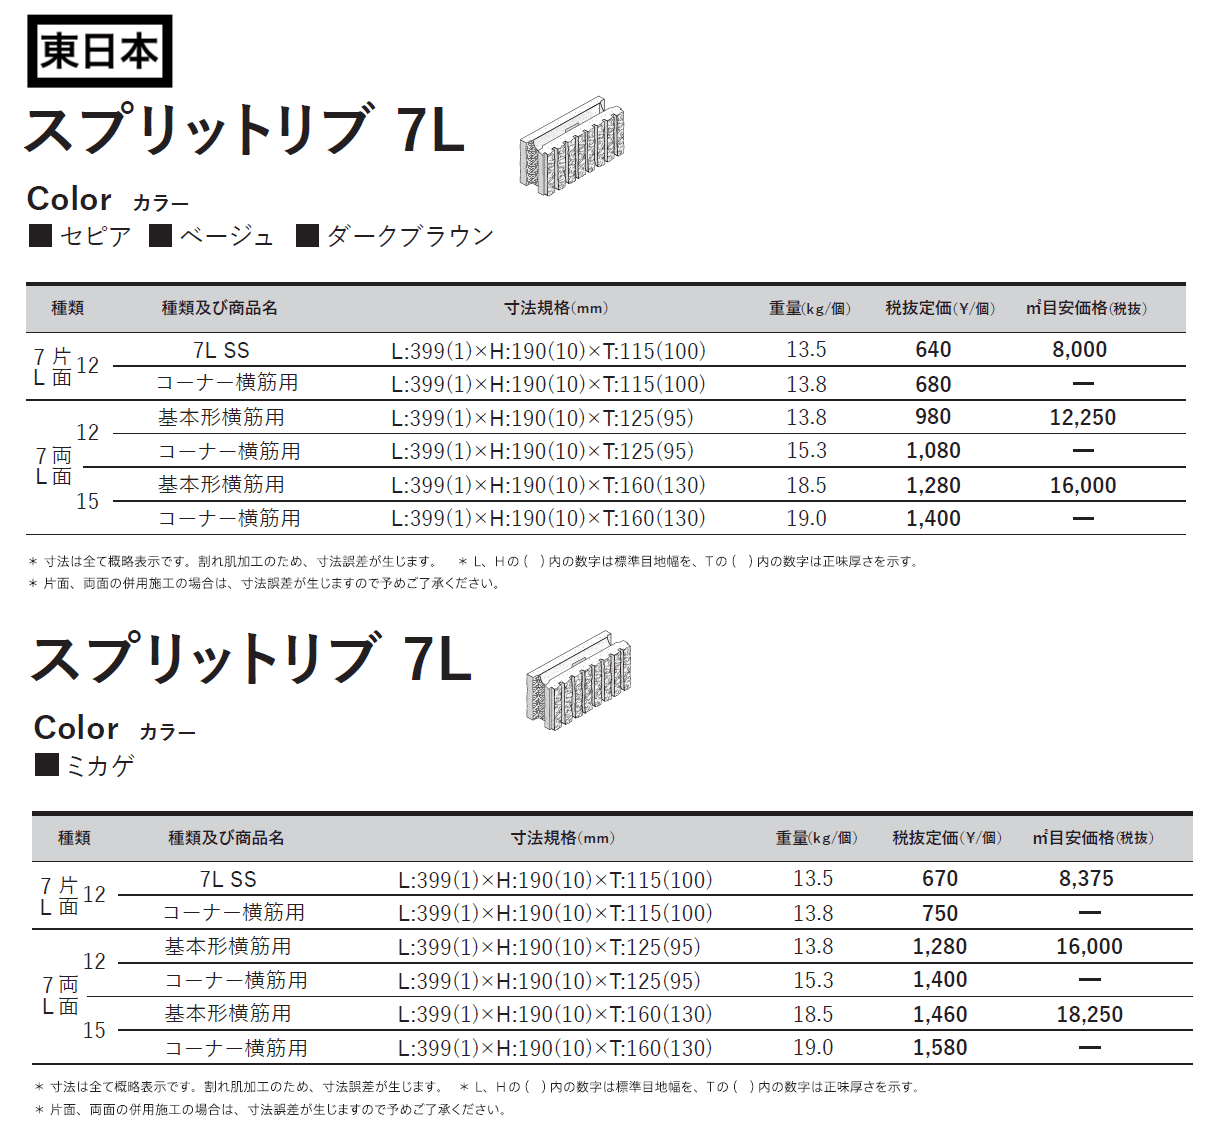 スプリットリブ12-7L SS【東日本・西日本】_価格_2